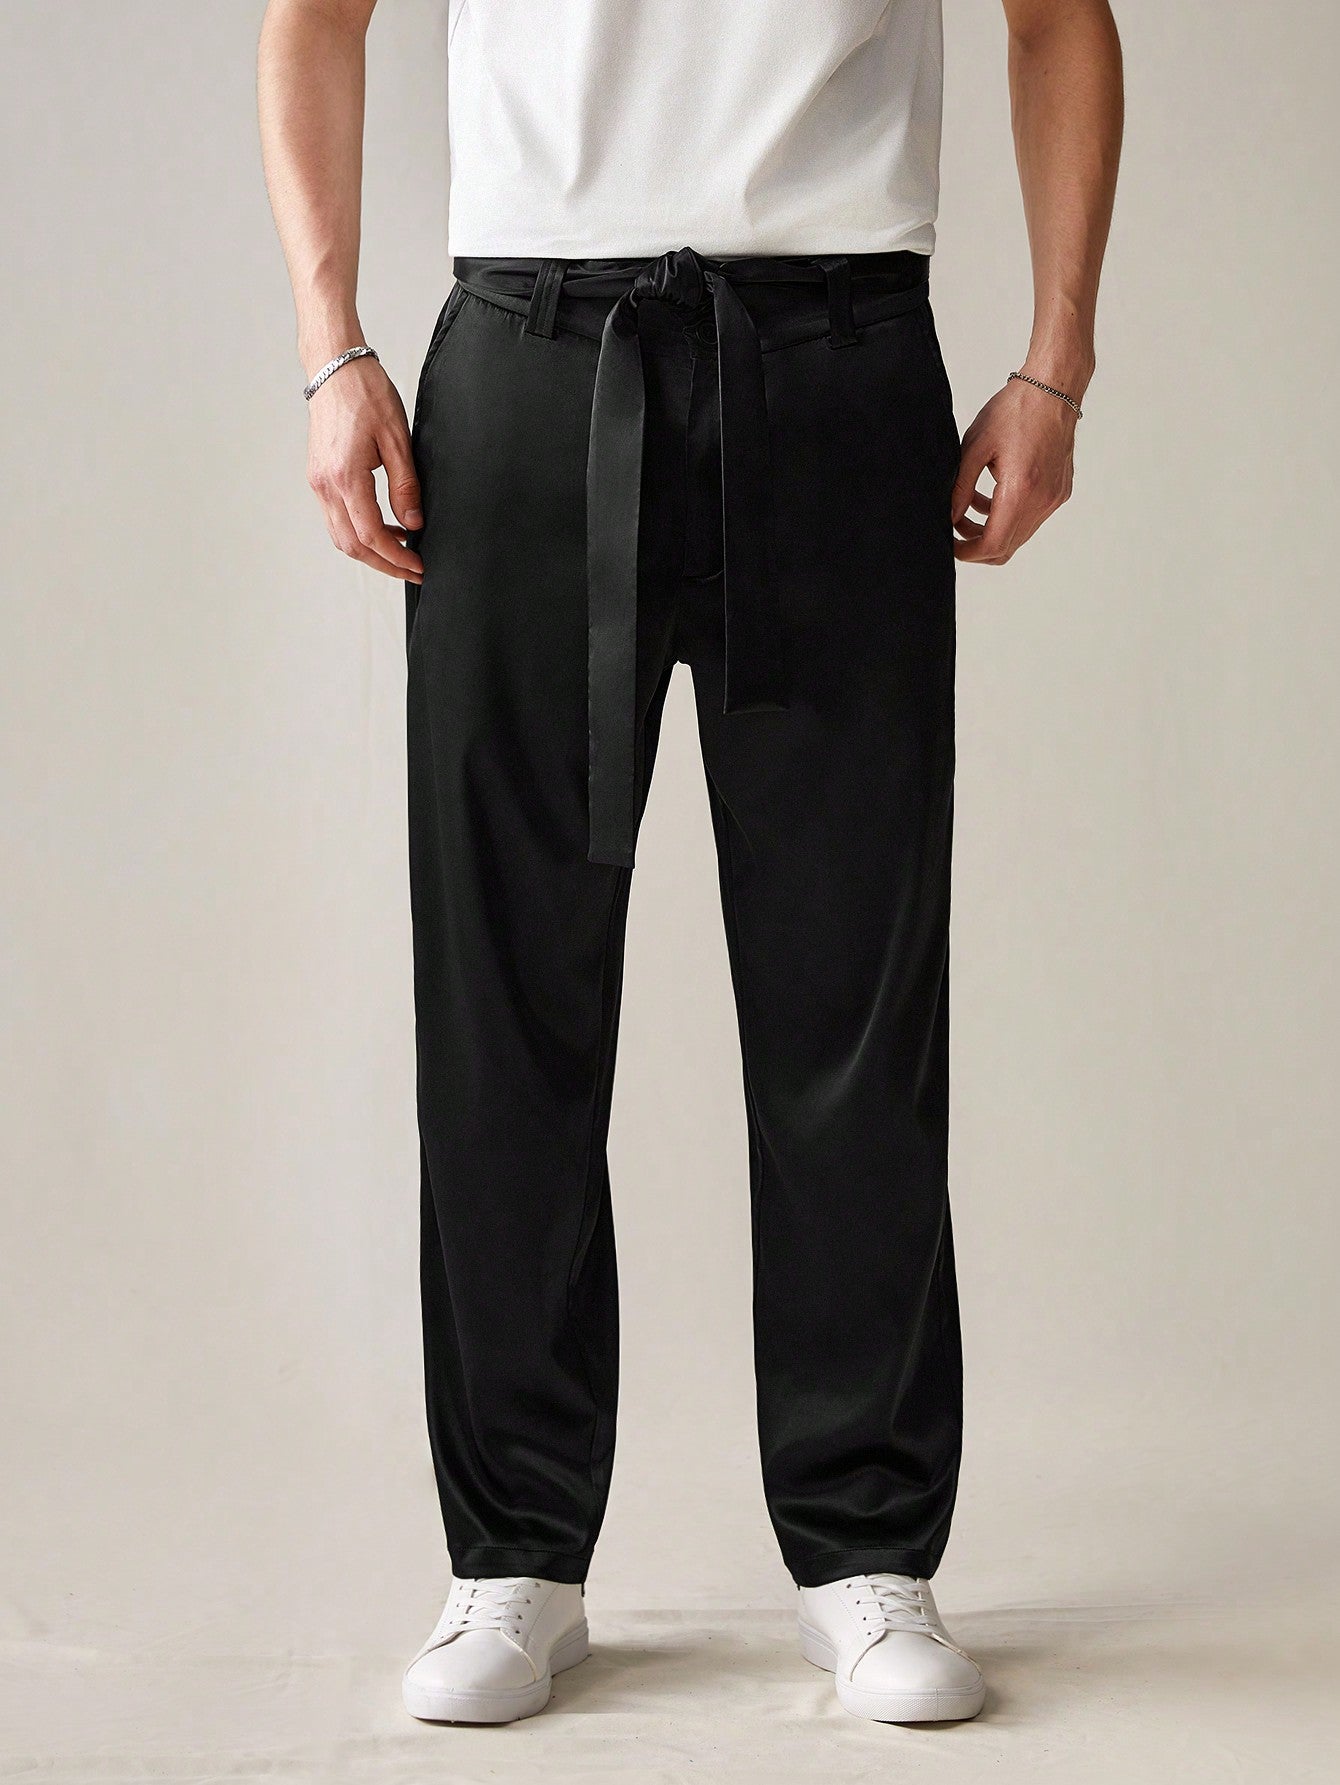 Men's Simple Solid Color Woven Long Pants